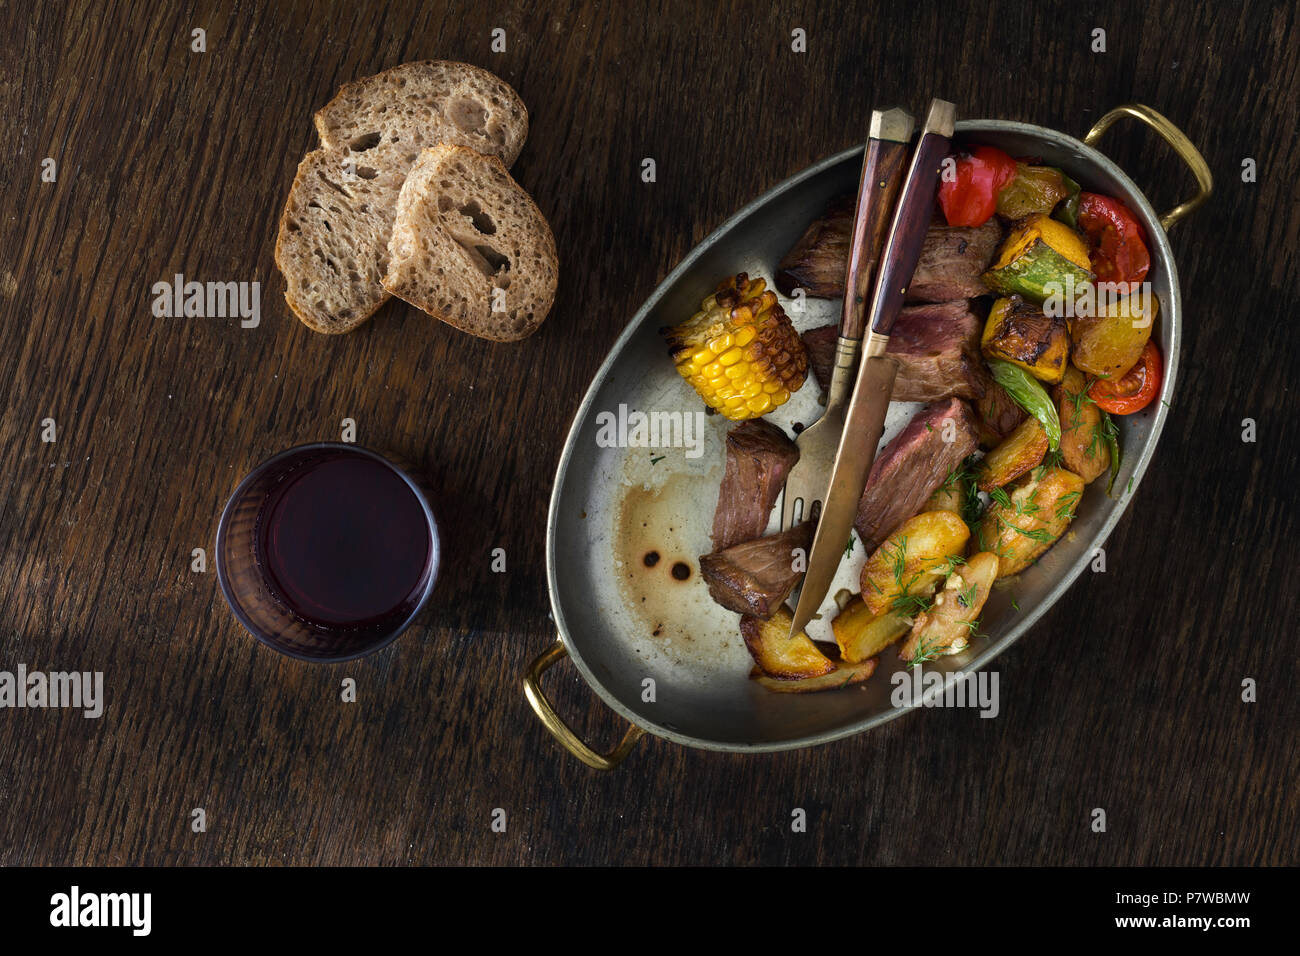 Carne filete con patatas fritas y verduras en sartén sobre fondo oscuro con un vaso de vino tinto, vista superior. Concepto de tabla de cena Foto de stock